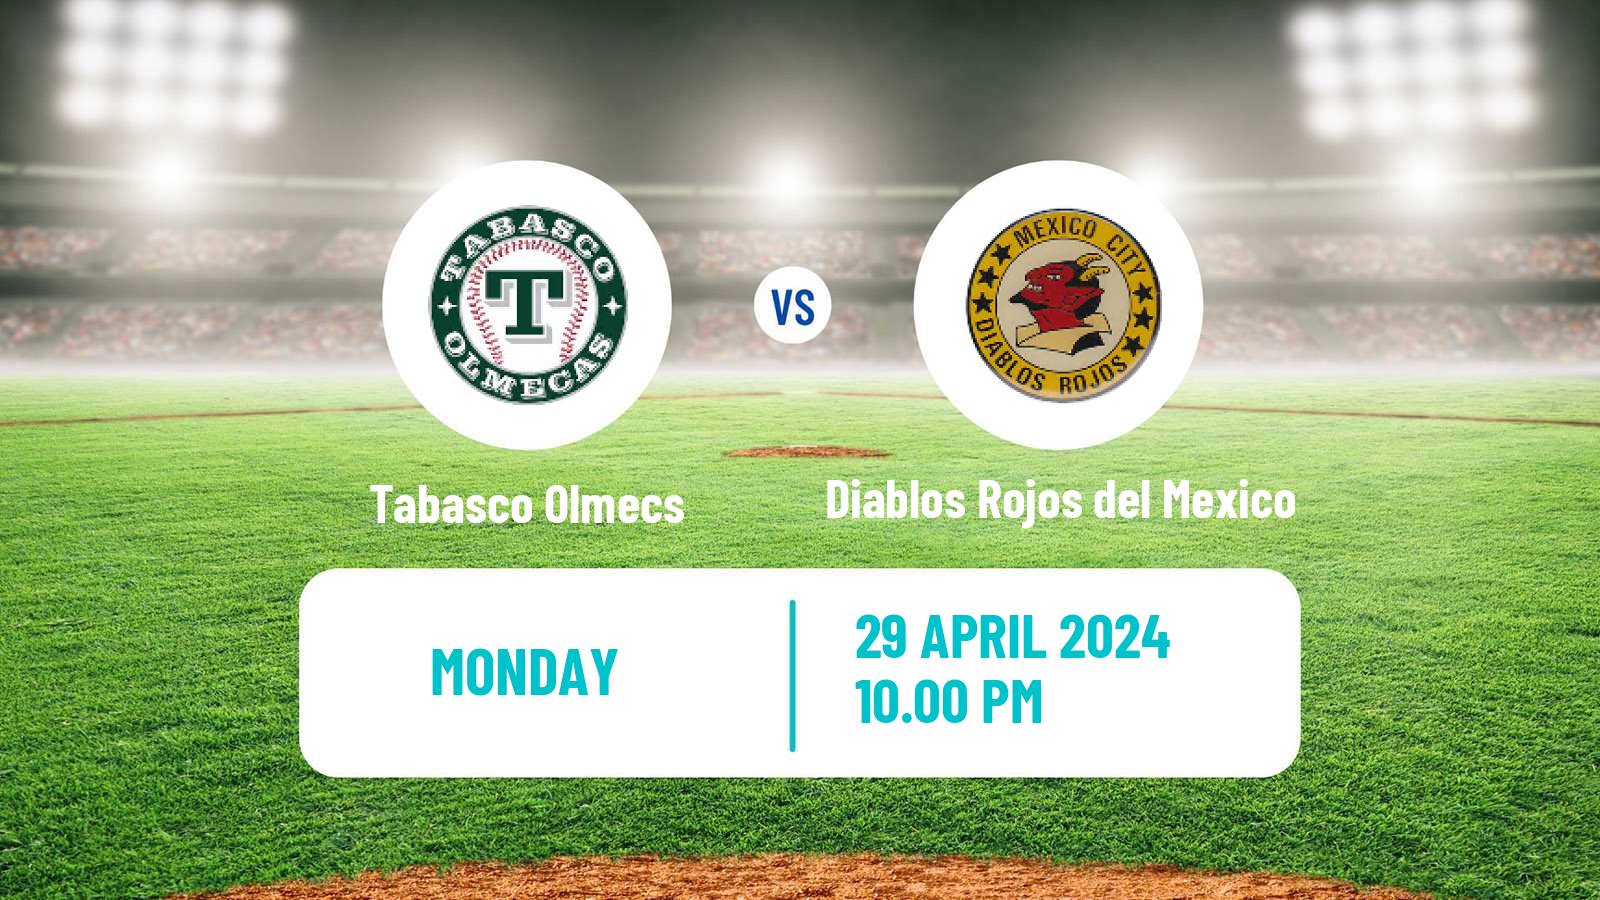 Baseball LMB Tabasco Olmecs - Diablos Rojos del Mexico